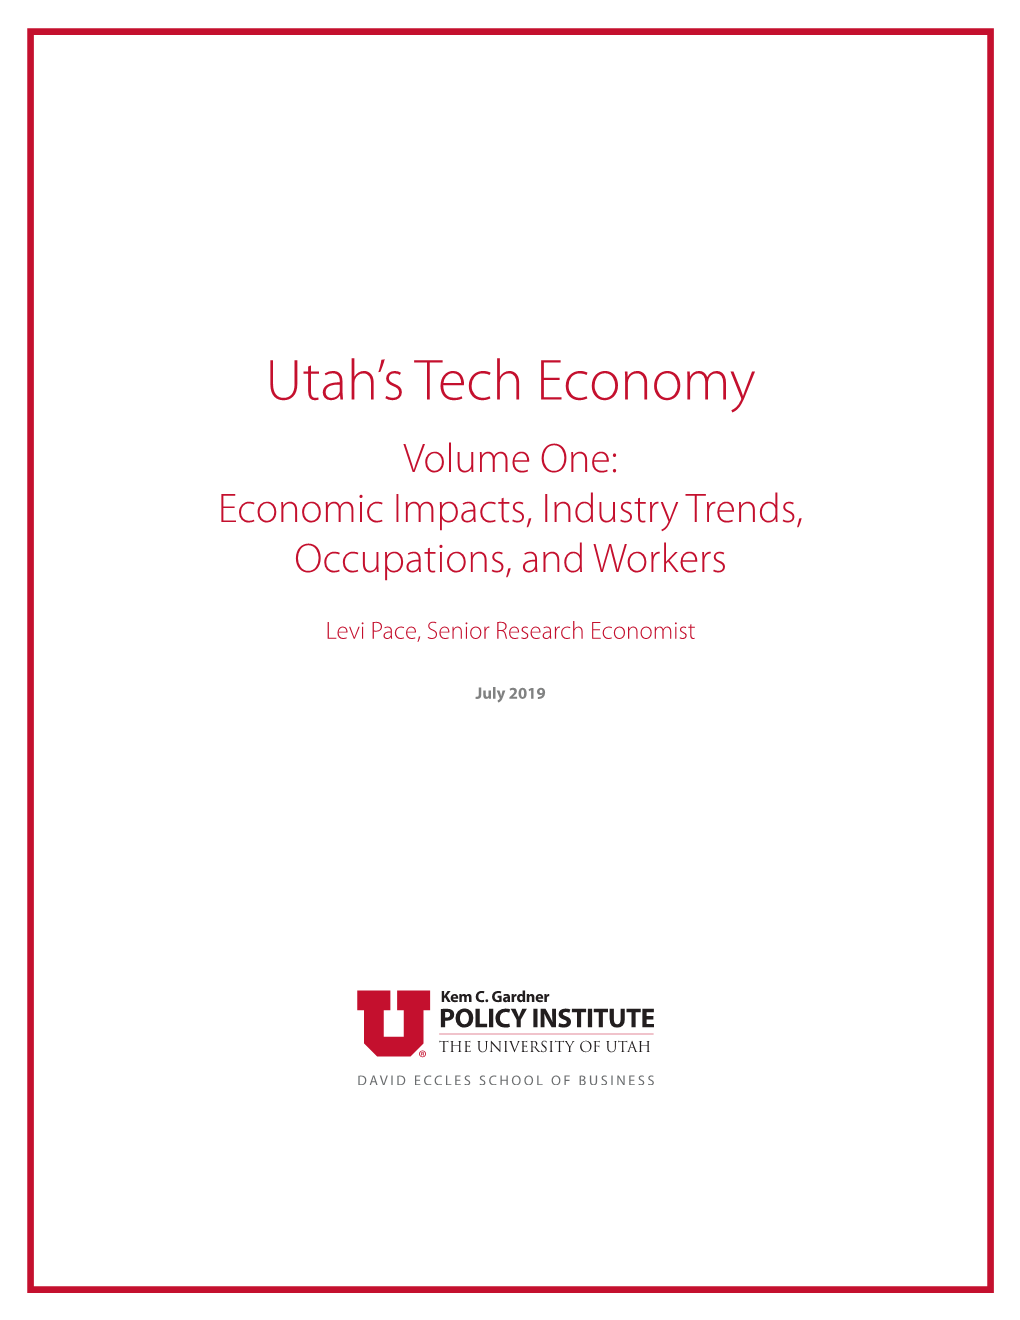 Utah's Tech Economy Volume One: Economic Impacts, Industry Trends